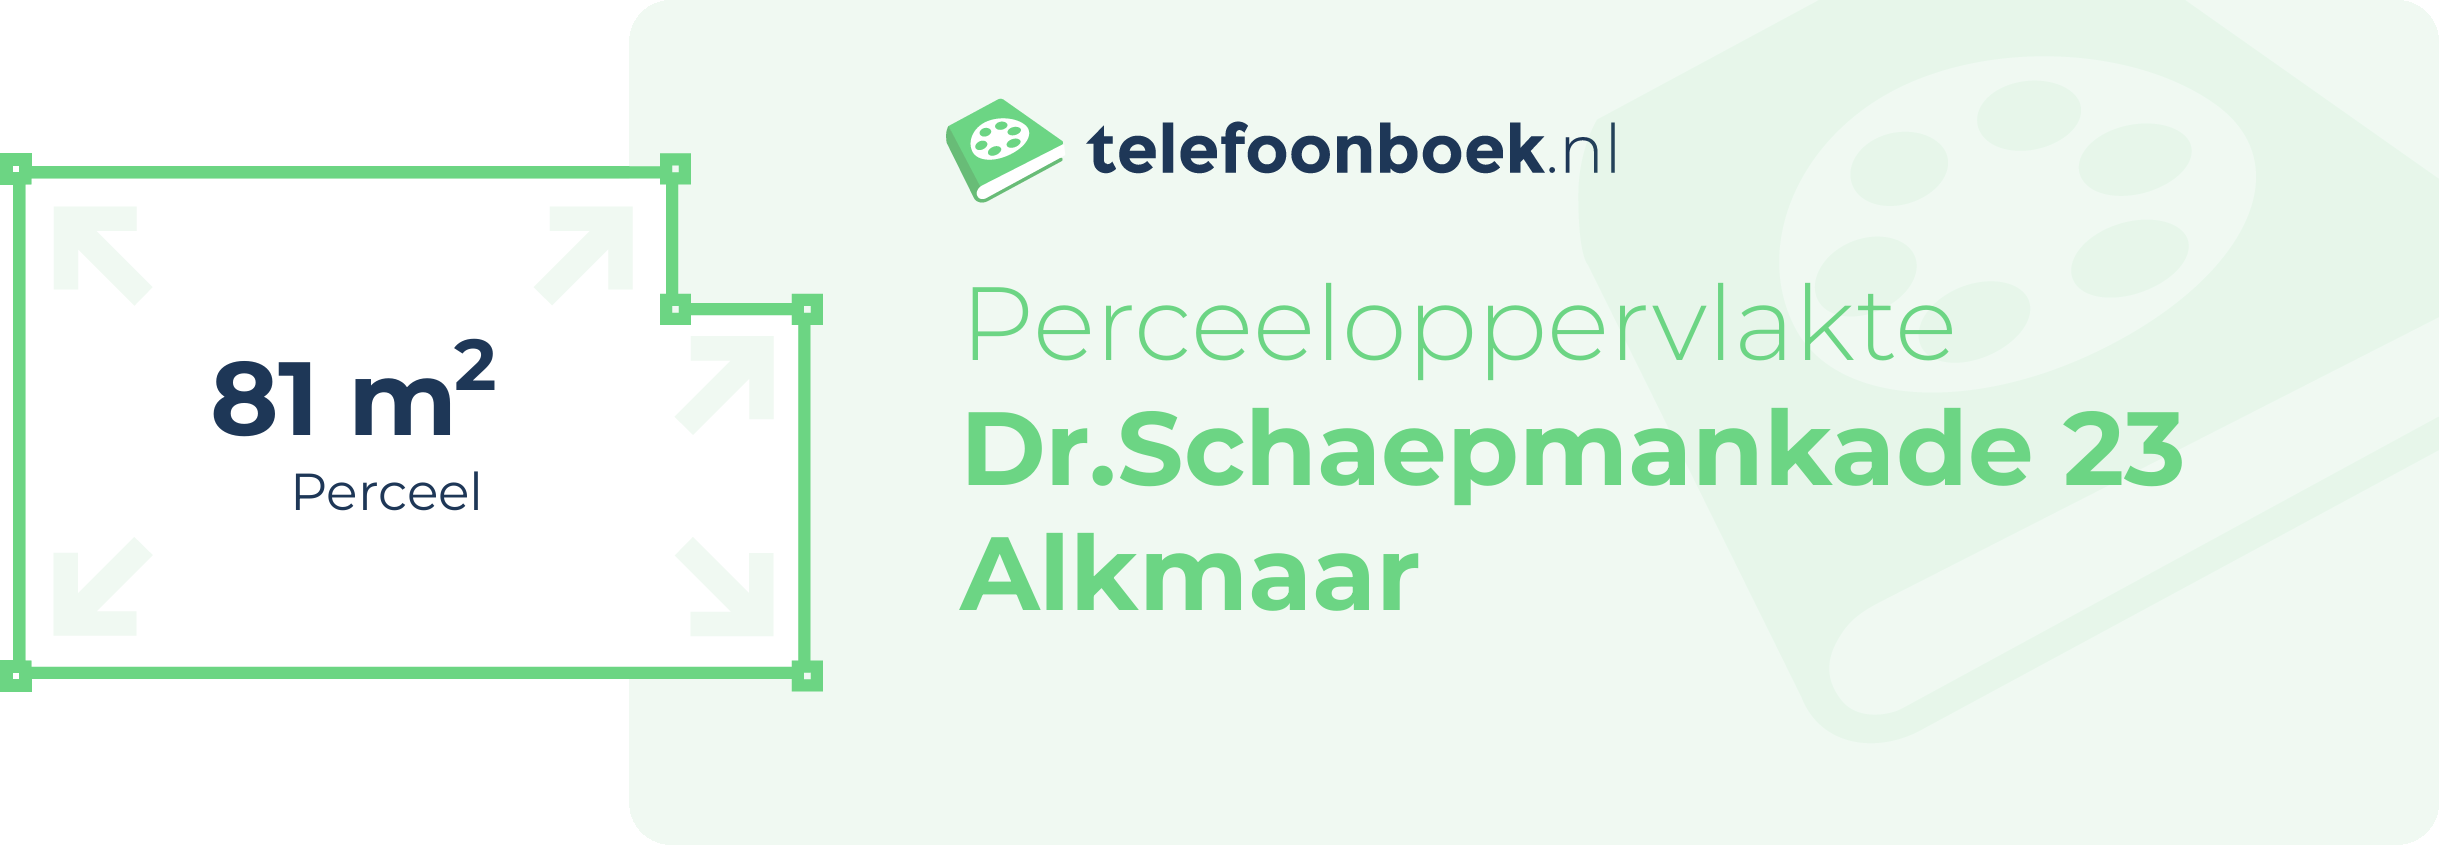 Perceeloppervlakte Dr.Schaepmankade 23 Alkmaar